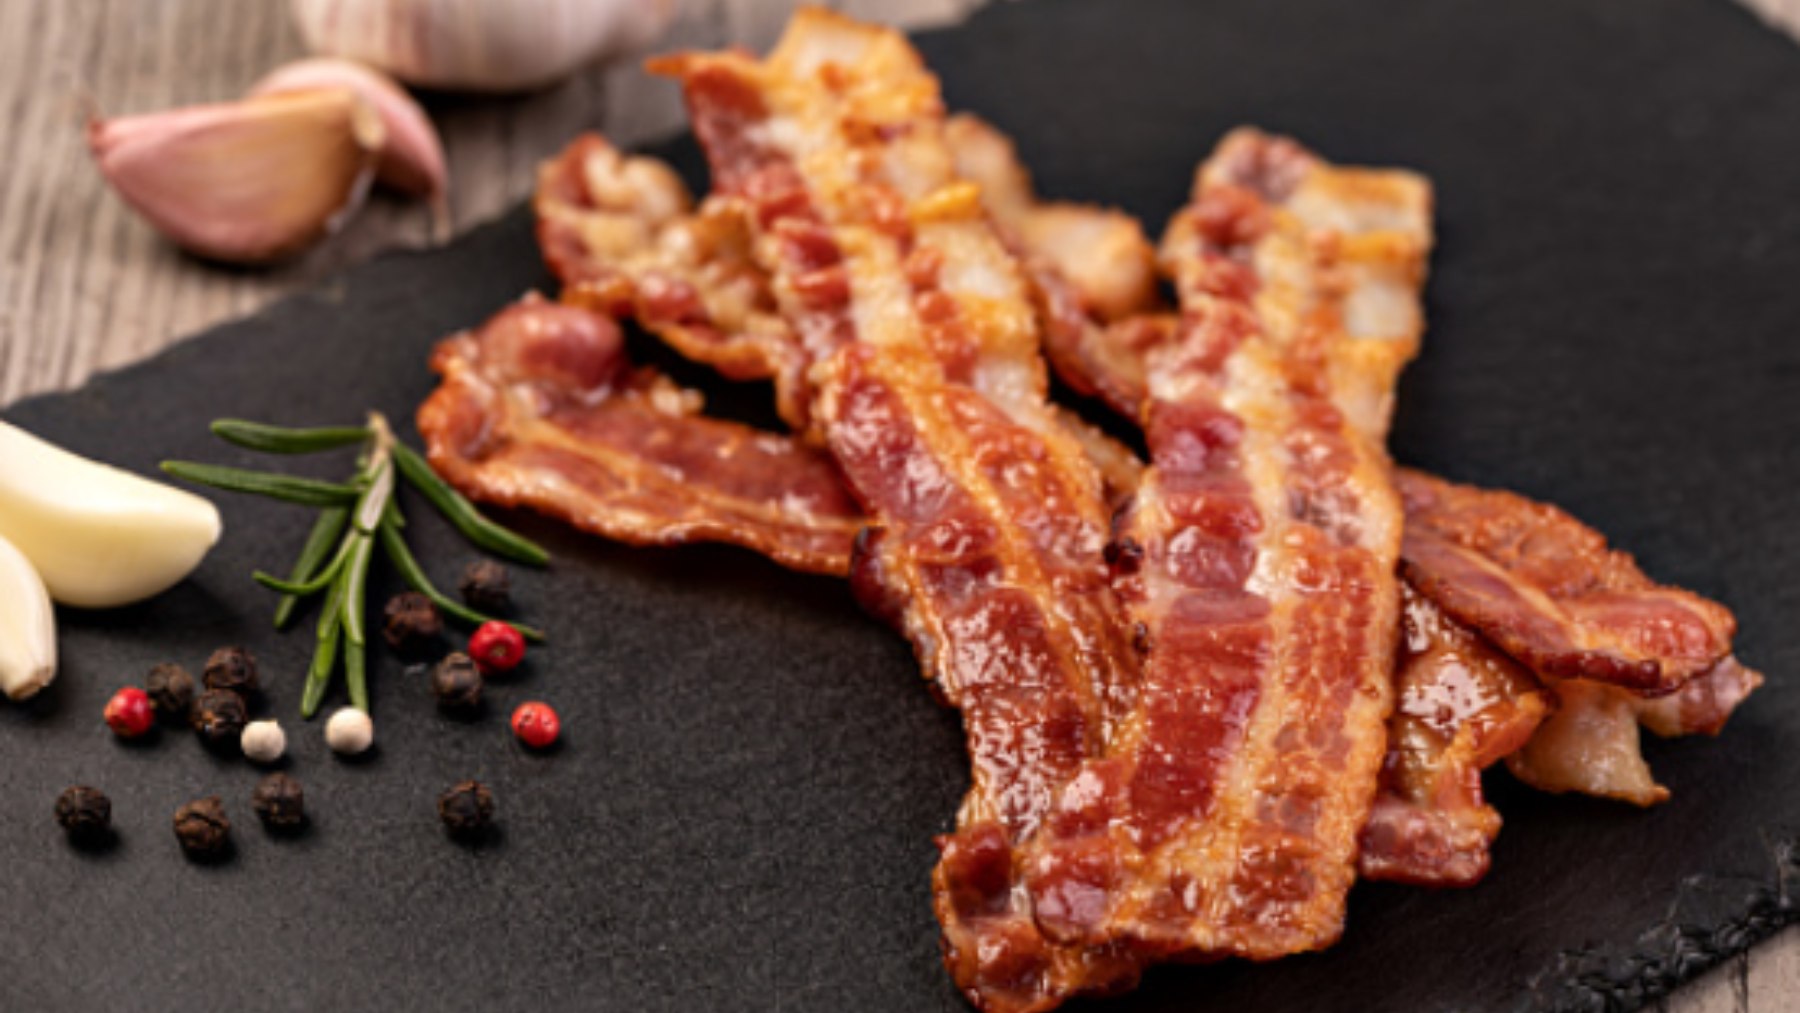 Bacon crujiente al microondas: lo tendrás en 2 minutos